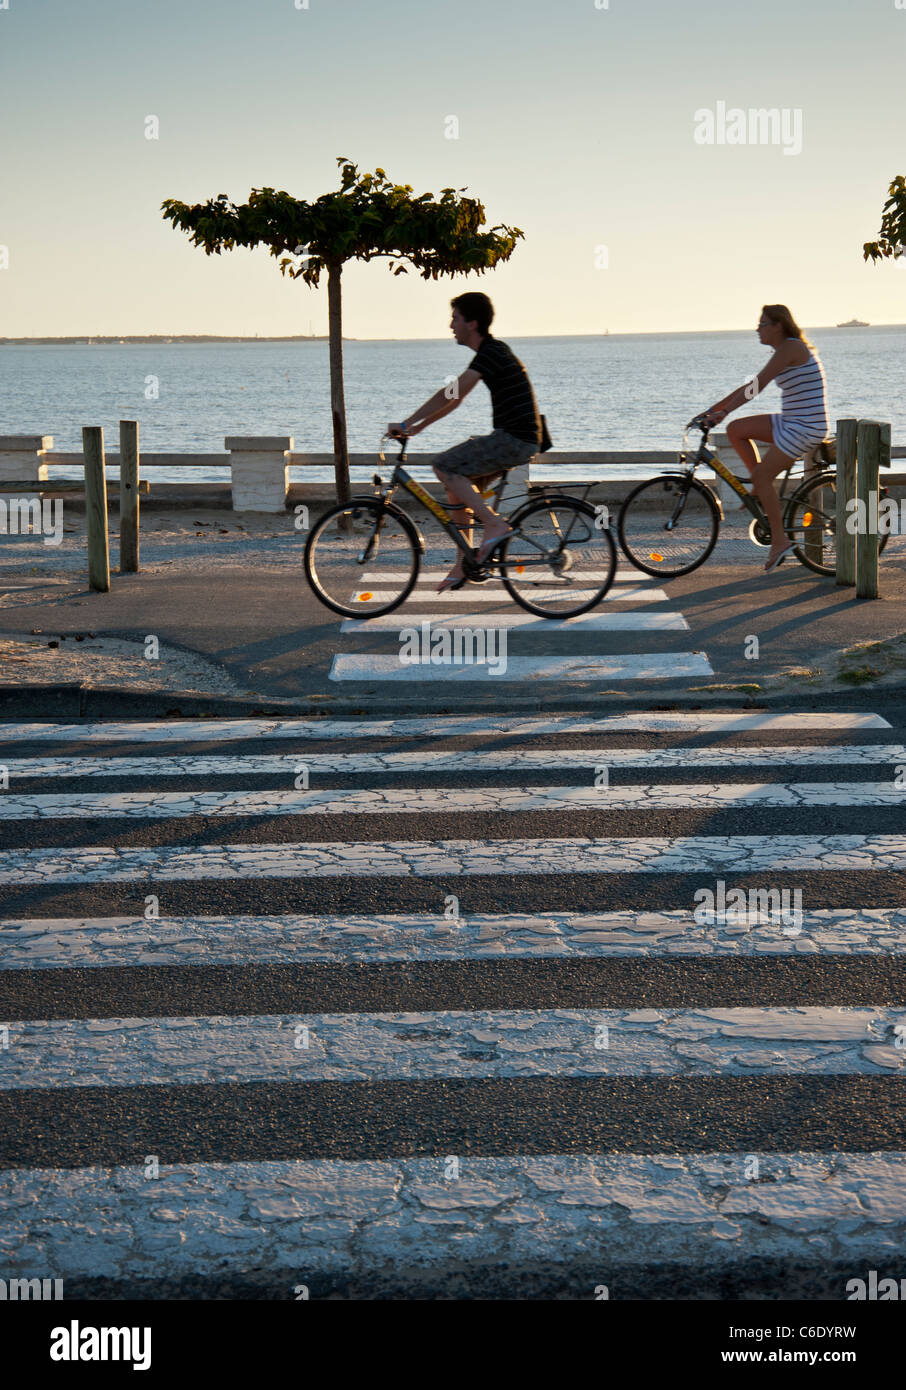 Der Strand bei Saint Georges De Didonne, Charente-Maritime, Frankreich. Radfahrer fahren entlang der Strandpromenade in der Nähe von einem Zebrastreifen Stockfoto